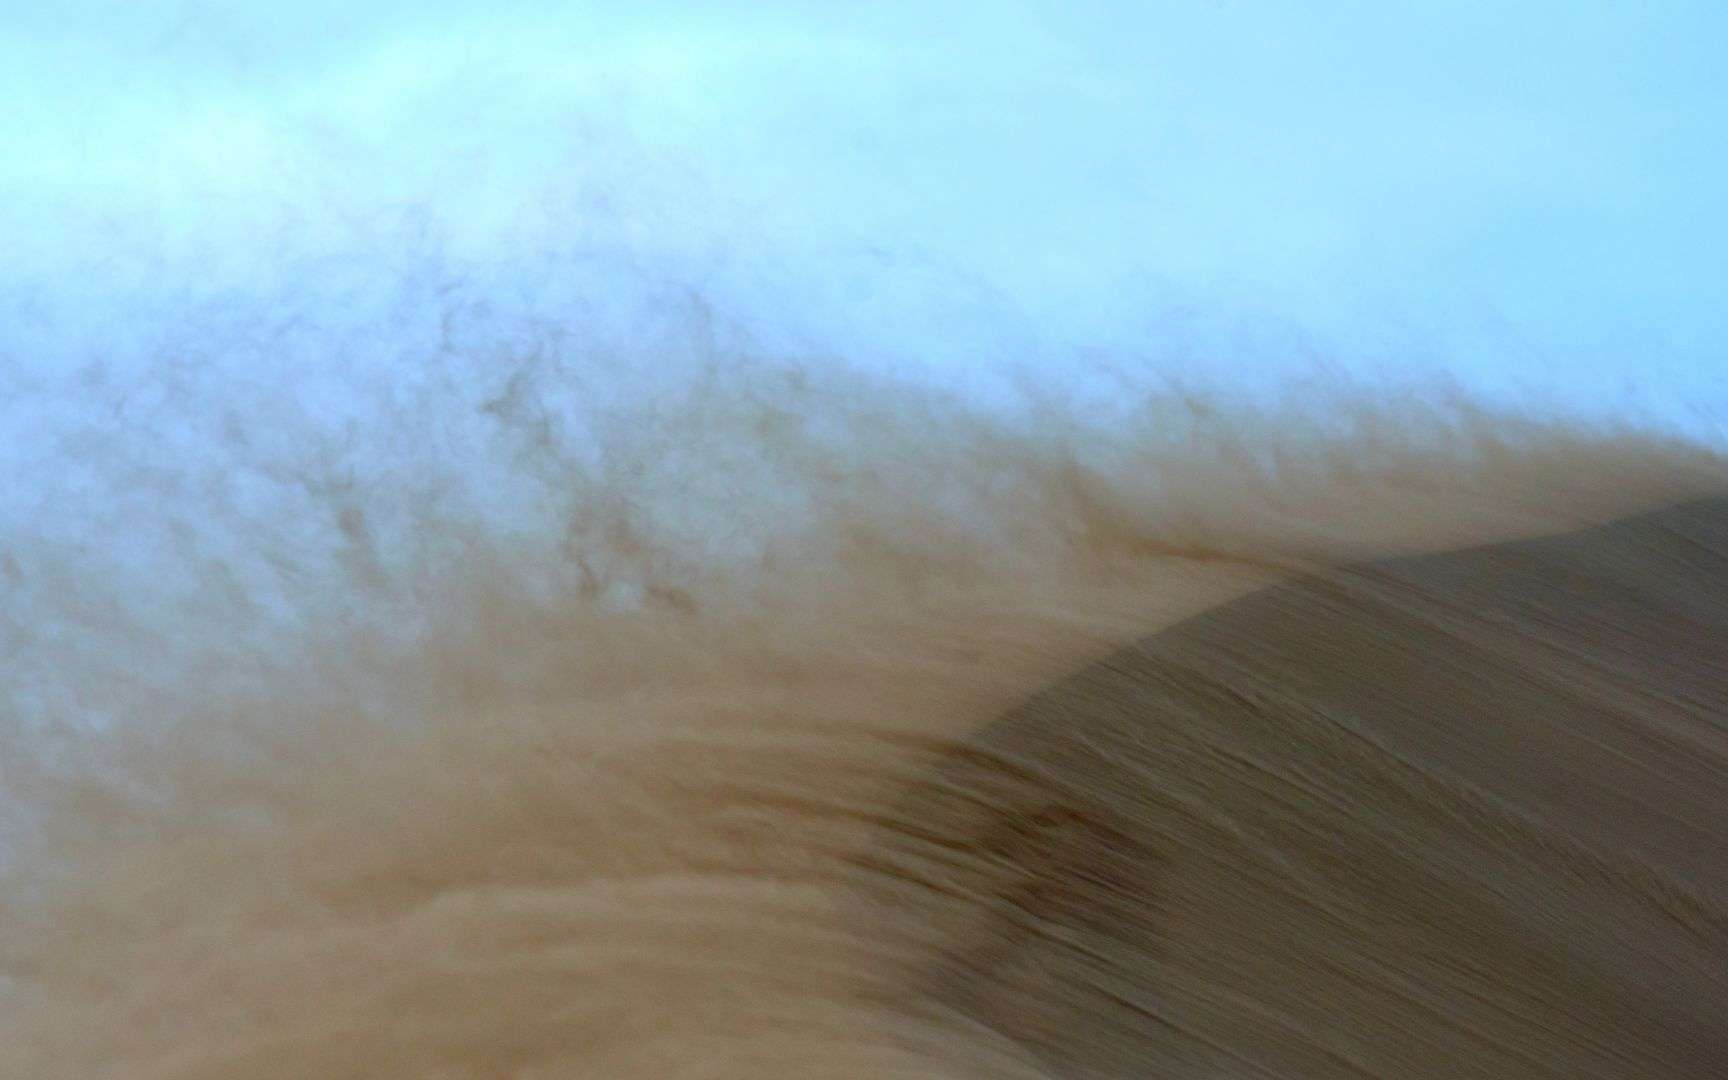 Le coup de vent de samedi a généré une tempête de sable sur les plages normandes. © Canva